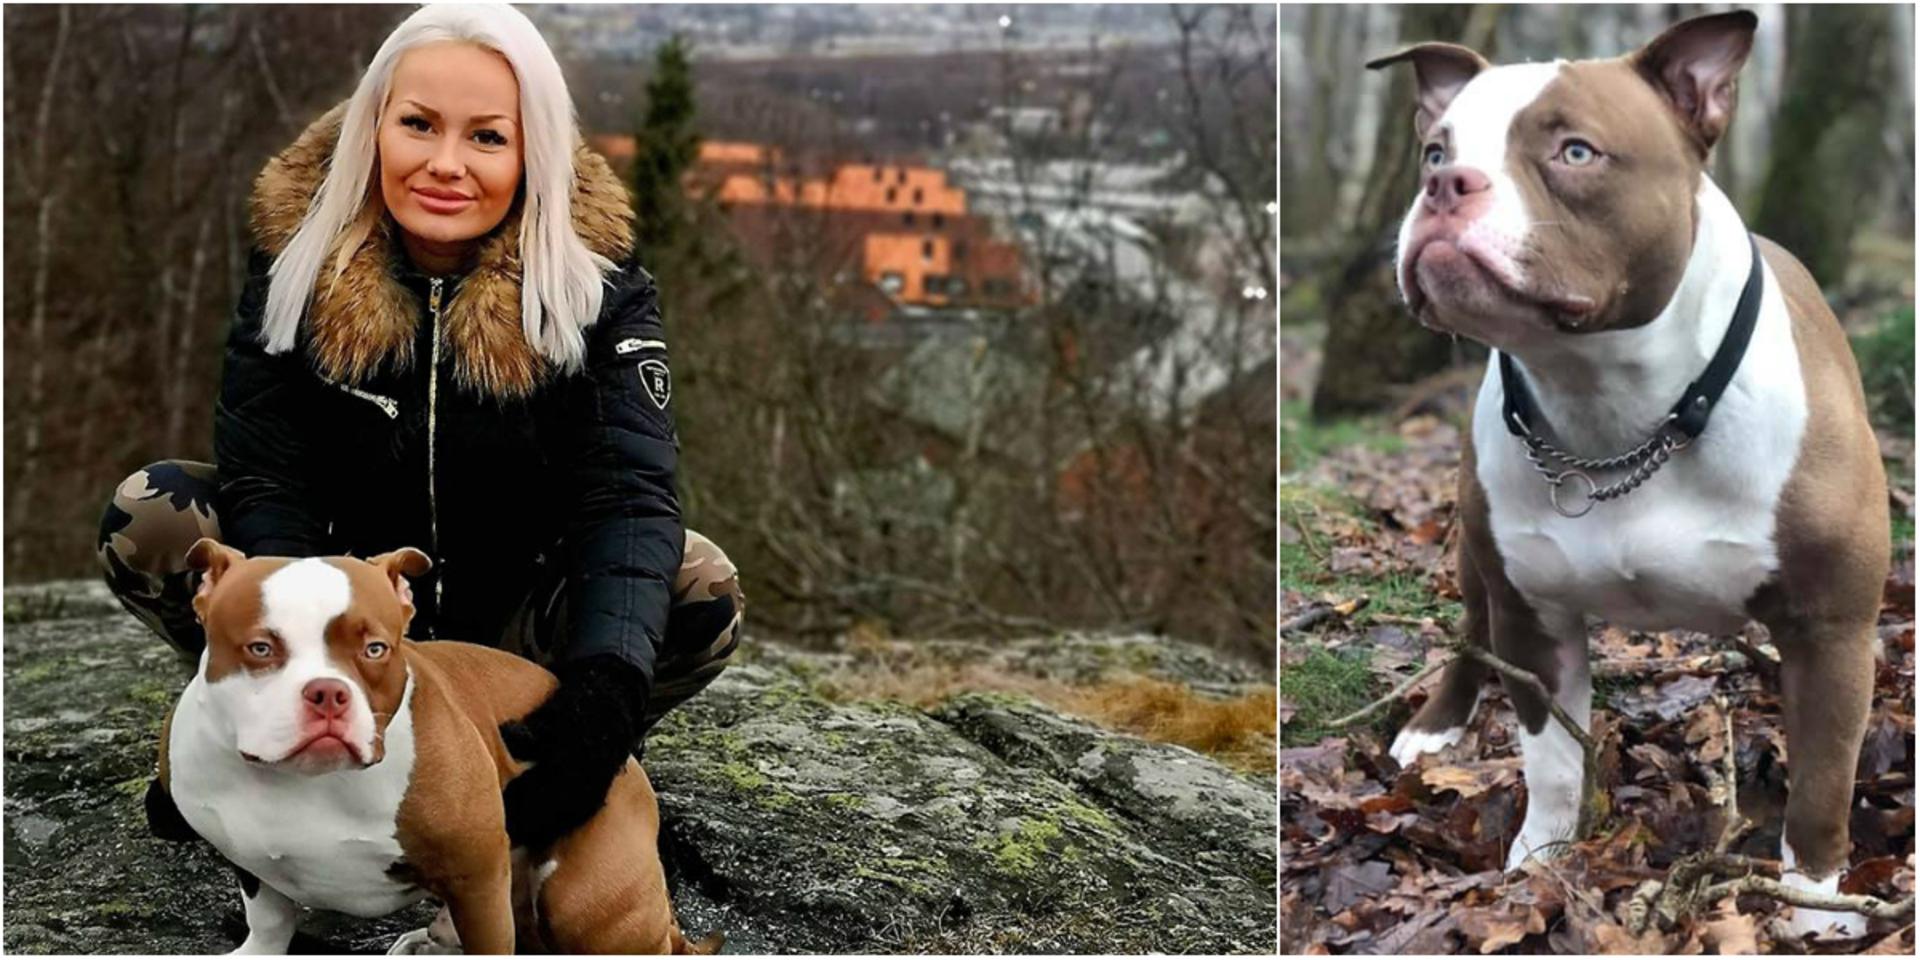 Maria Knudsens hund Bronson har varit försvunnen sedan i söndags eftermiddag 